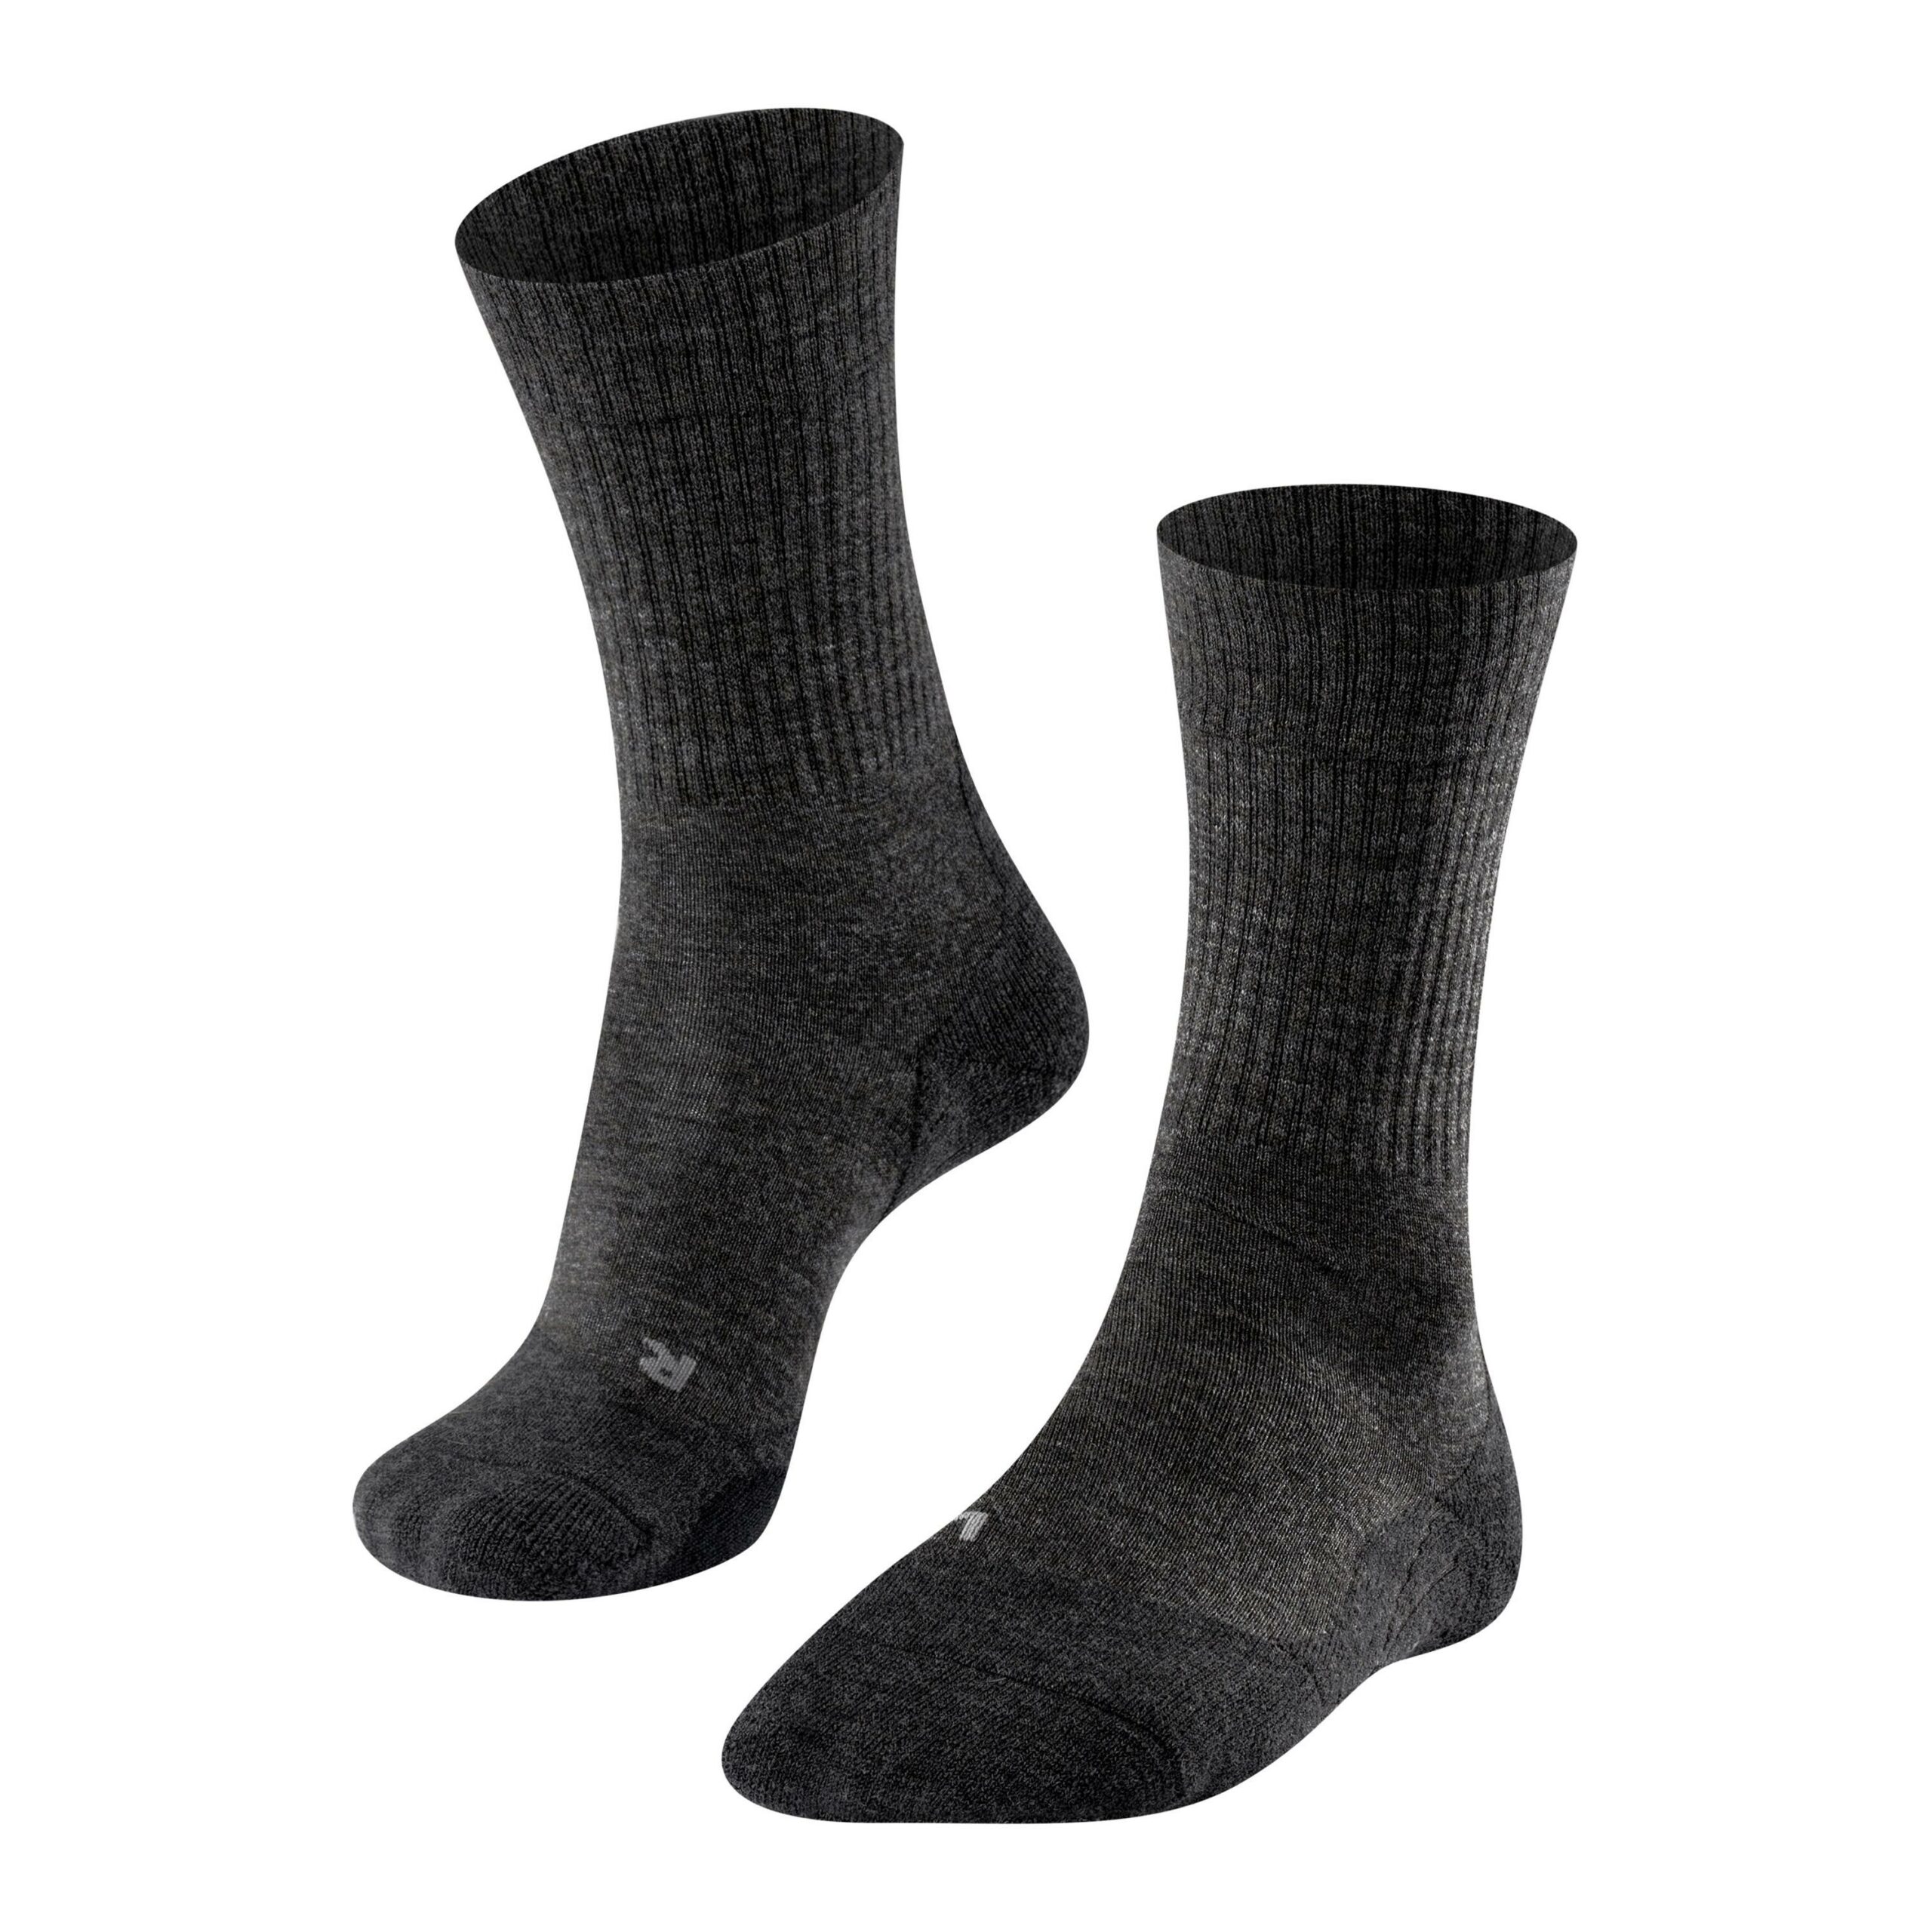 Falke TK2 EXPLORE Socken Damen Hersteller: Falke Bestellnummer:4067112001253